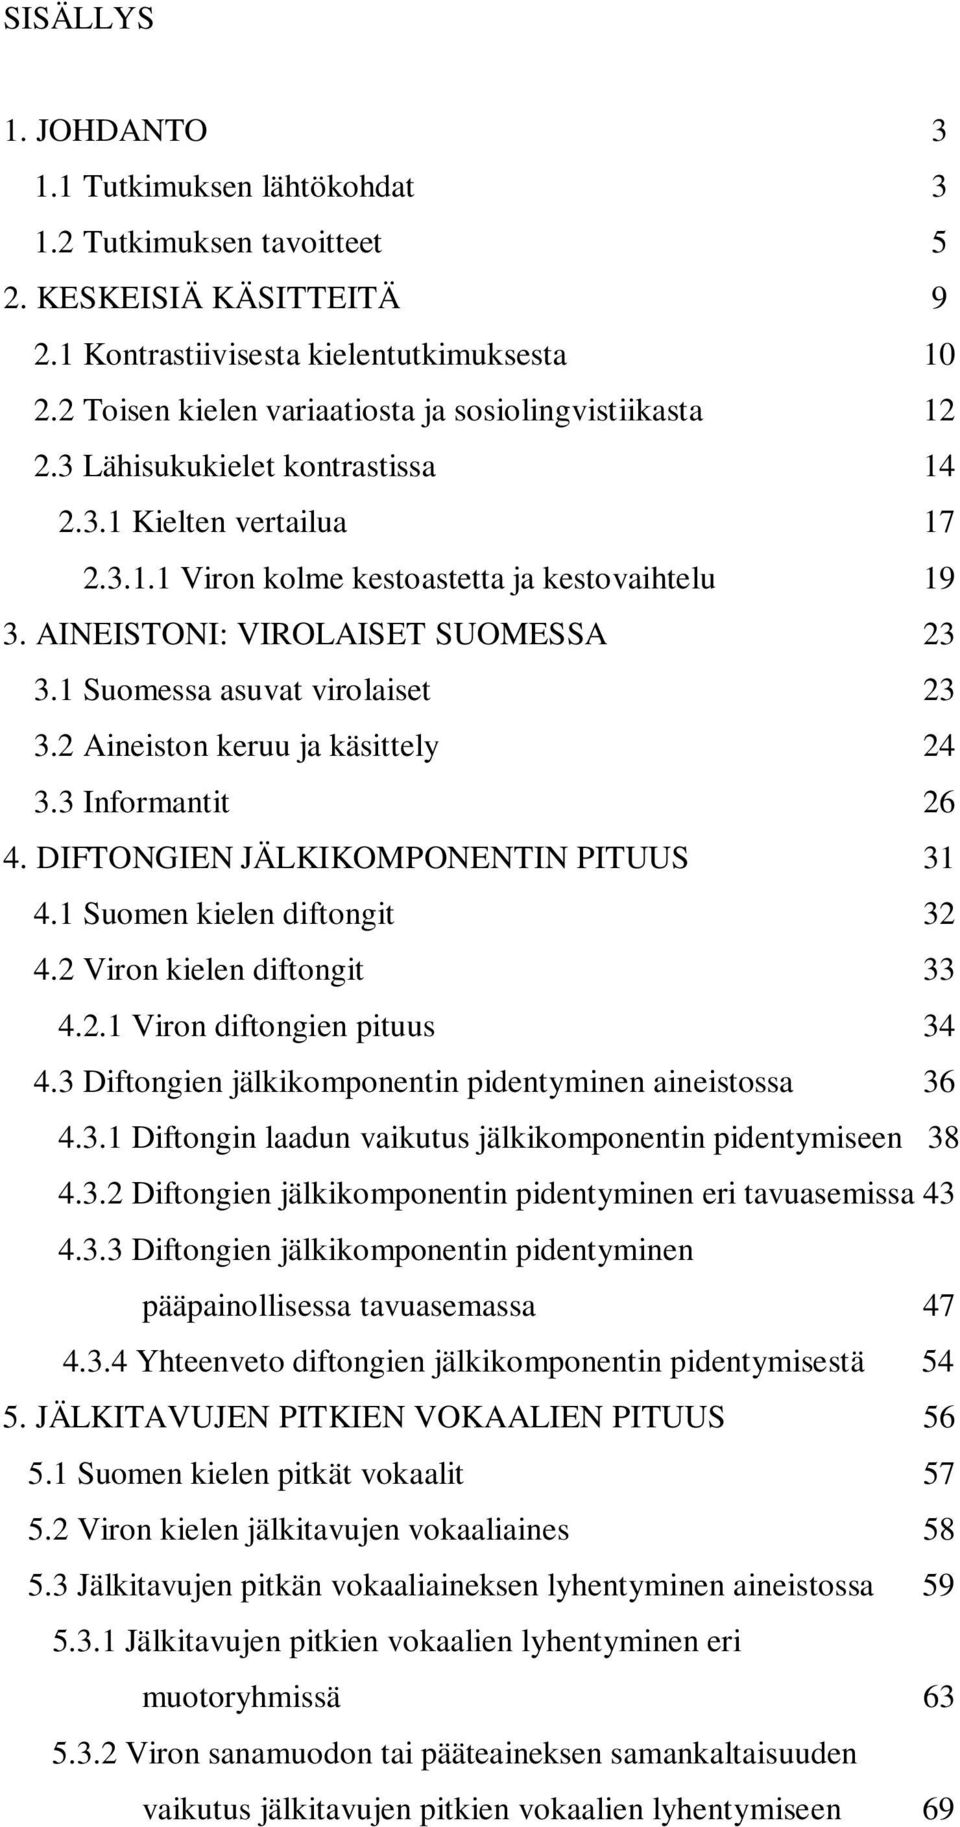 AINEISTONI: VIROLAISET SUOMESSA 23 3.1 Suomessa asuvat virolaiset 23 3.2 Aineiston keruu ja käsittely 24 3.3 Informantit 26 4. DIFTONGIEN JÄLKIKOMPONENTIN PITUUS 31 4.1 Suomen kielen diftongit 32 4.